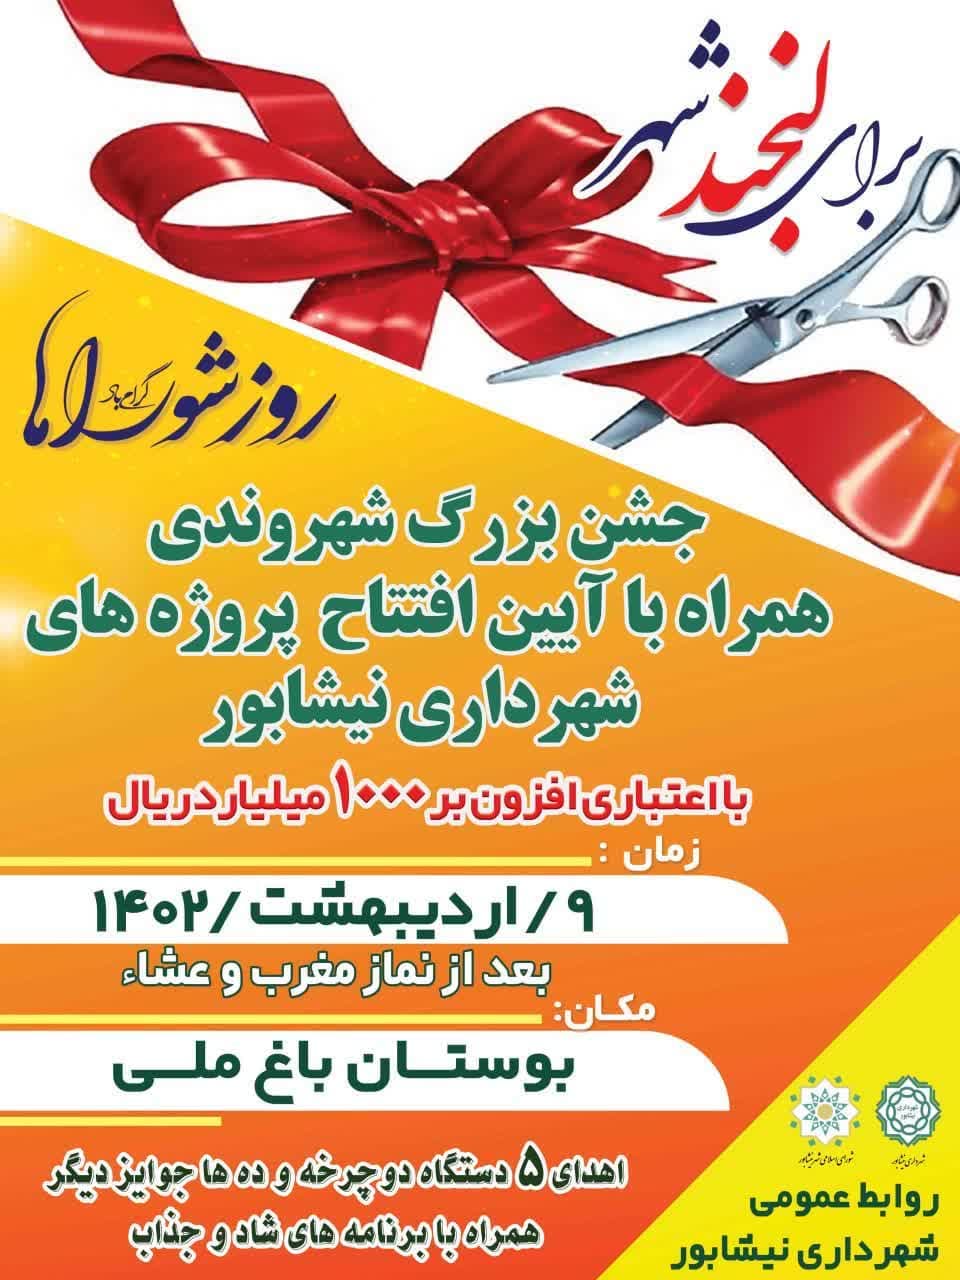 جشن بزرگ #شهروندی   همراه با آیین افتتاح پروژه های شهرداری نیشابور